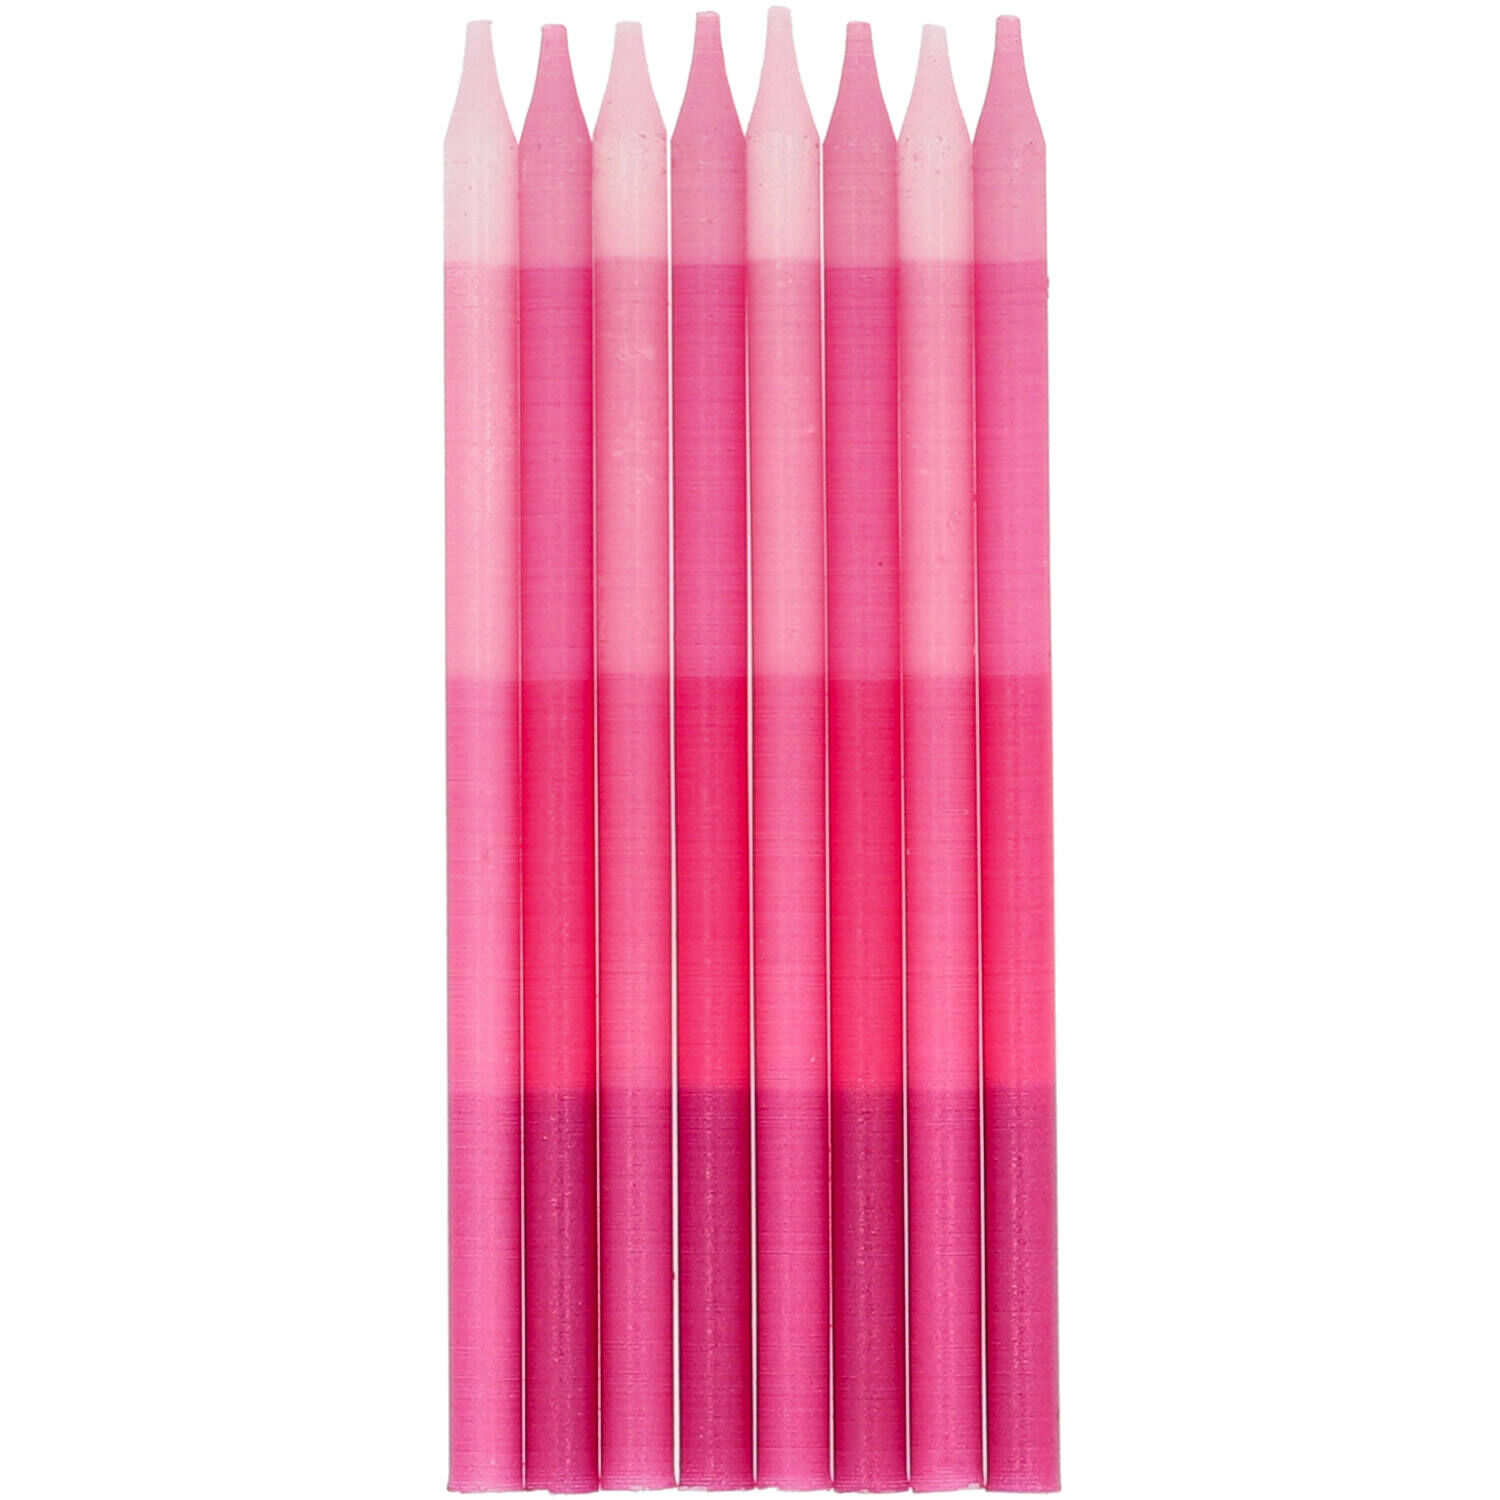 NEU Geburtstags-Kerzen, ca. 10cm, 24 Stck inkl. Halter, pink